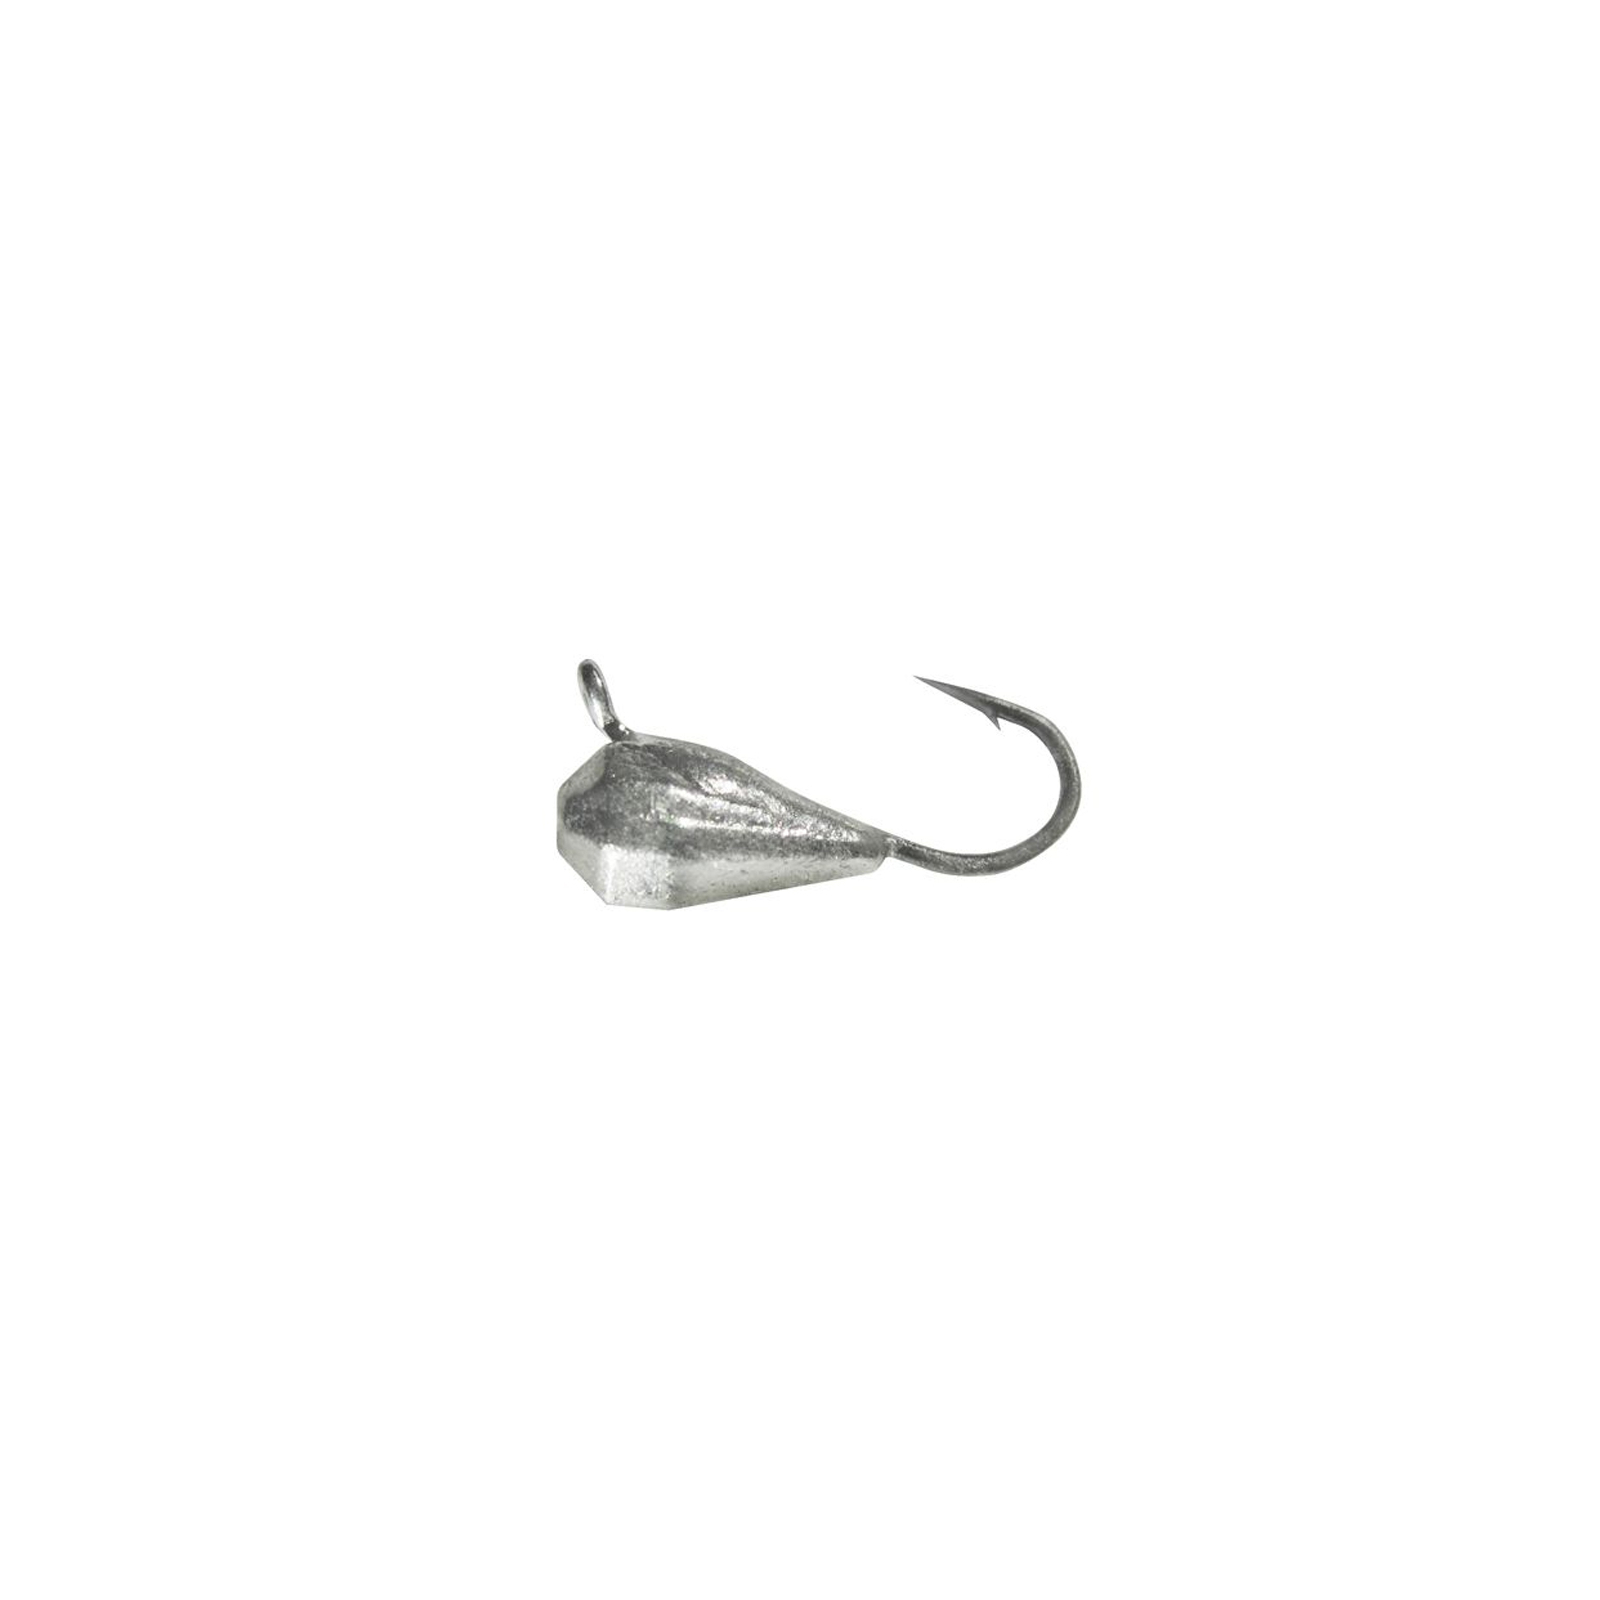 Мормышка Shark Граненая капля 0,42г диам. 4.0*7.5 крючок D14 ц:серебро (1843.03.73)